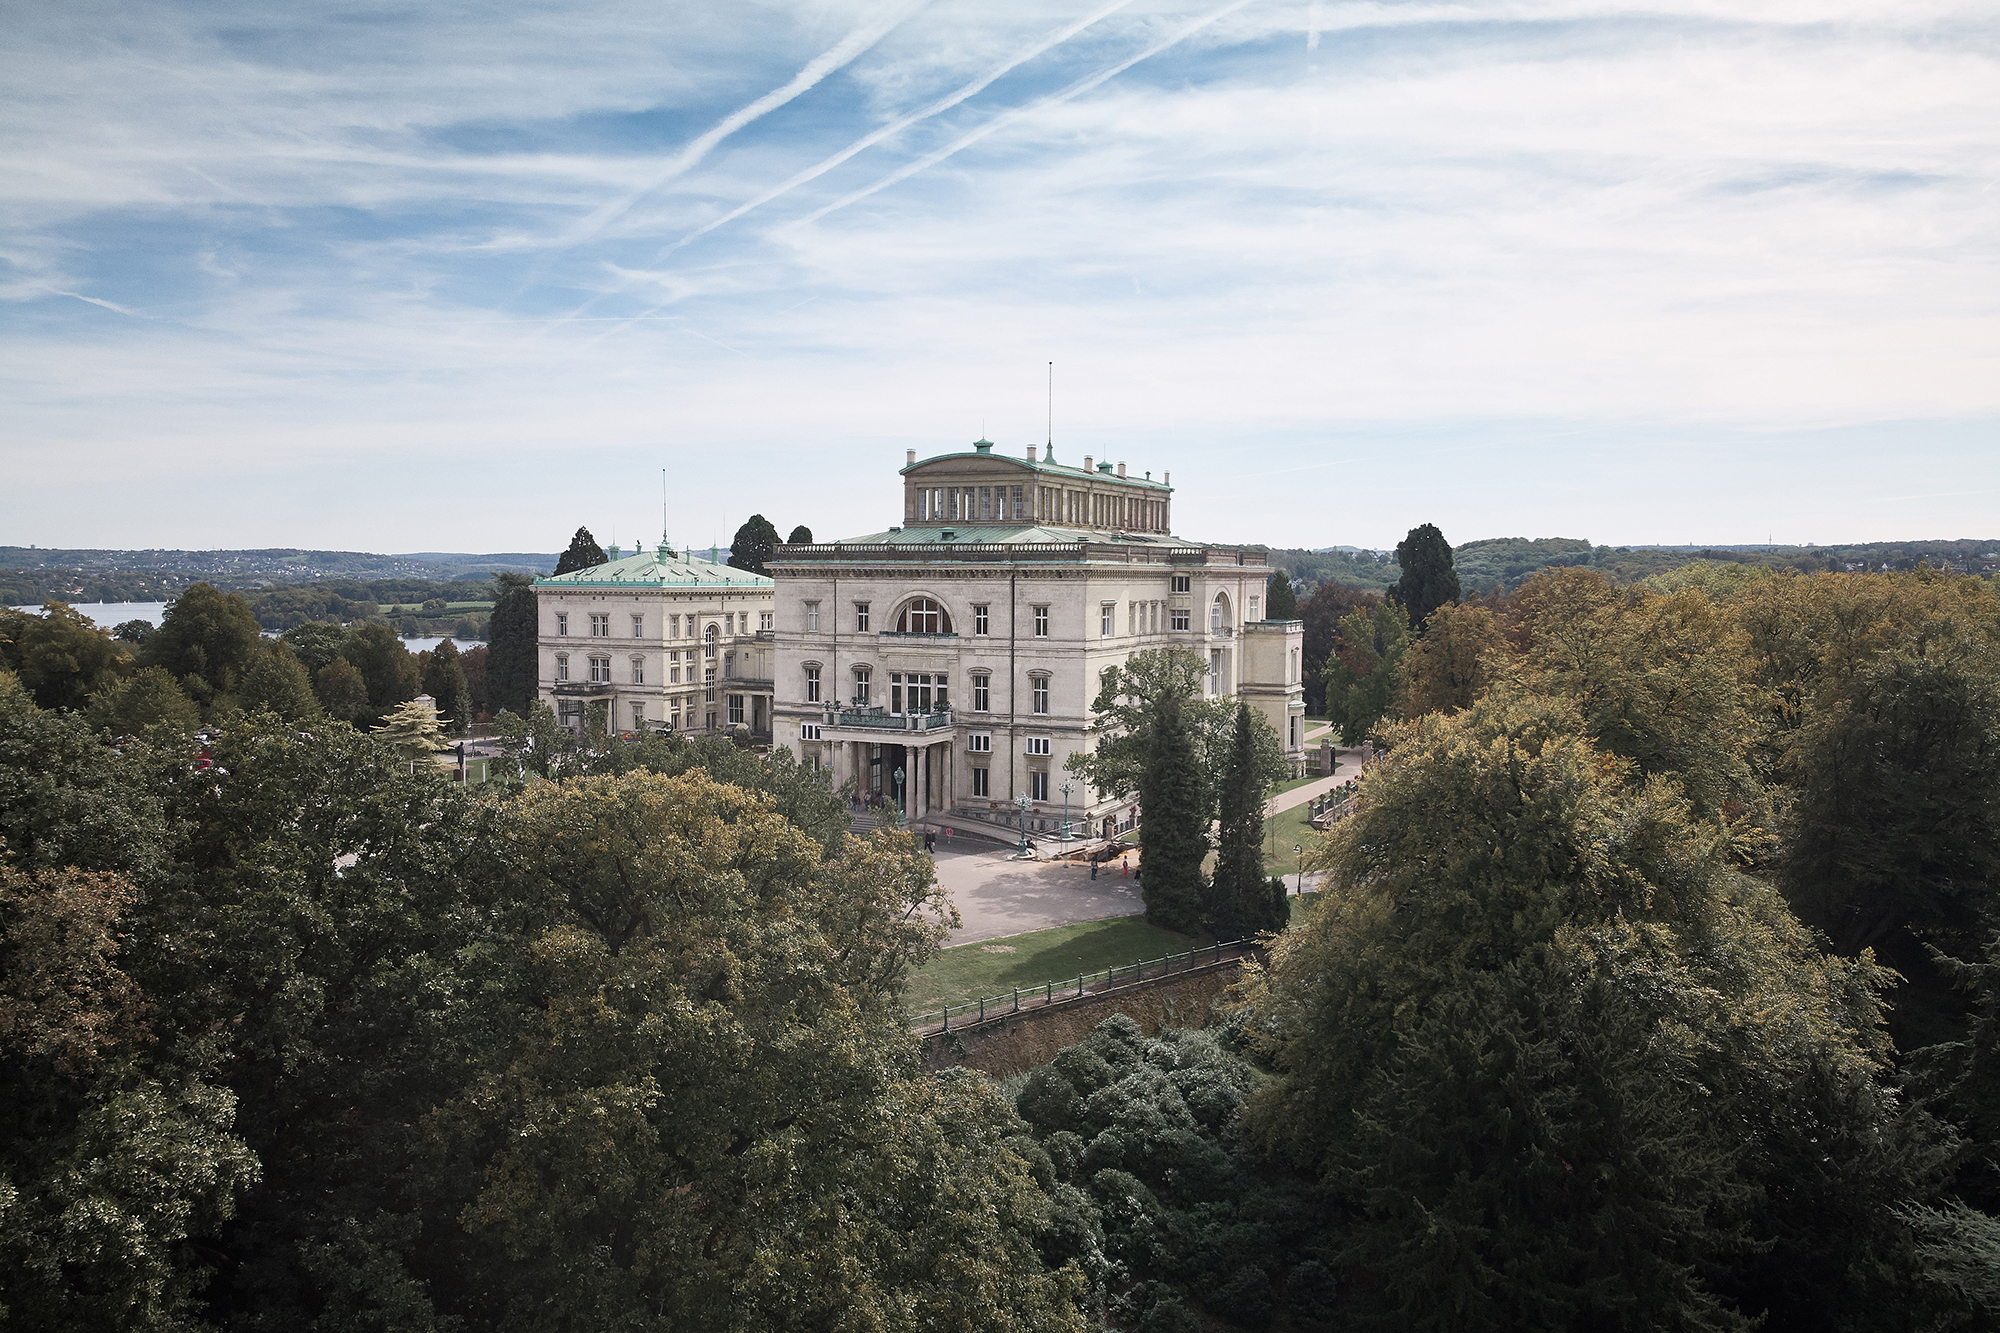 Villa Hügel in Essen (Bild: Peter Gwiazda/Alfried Krupp von Bohlen und Halbach-Stiftung)